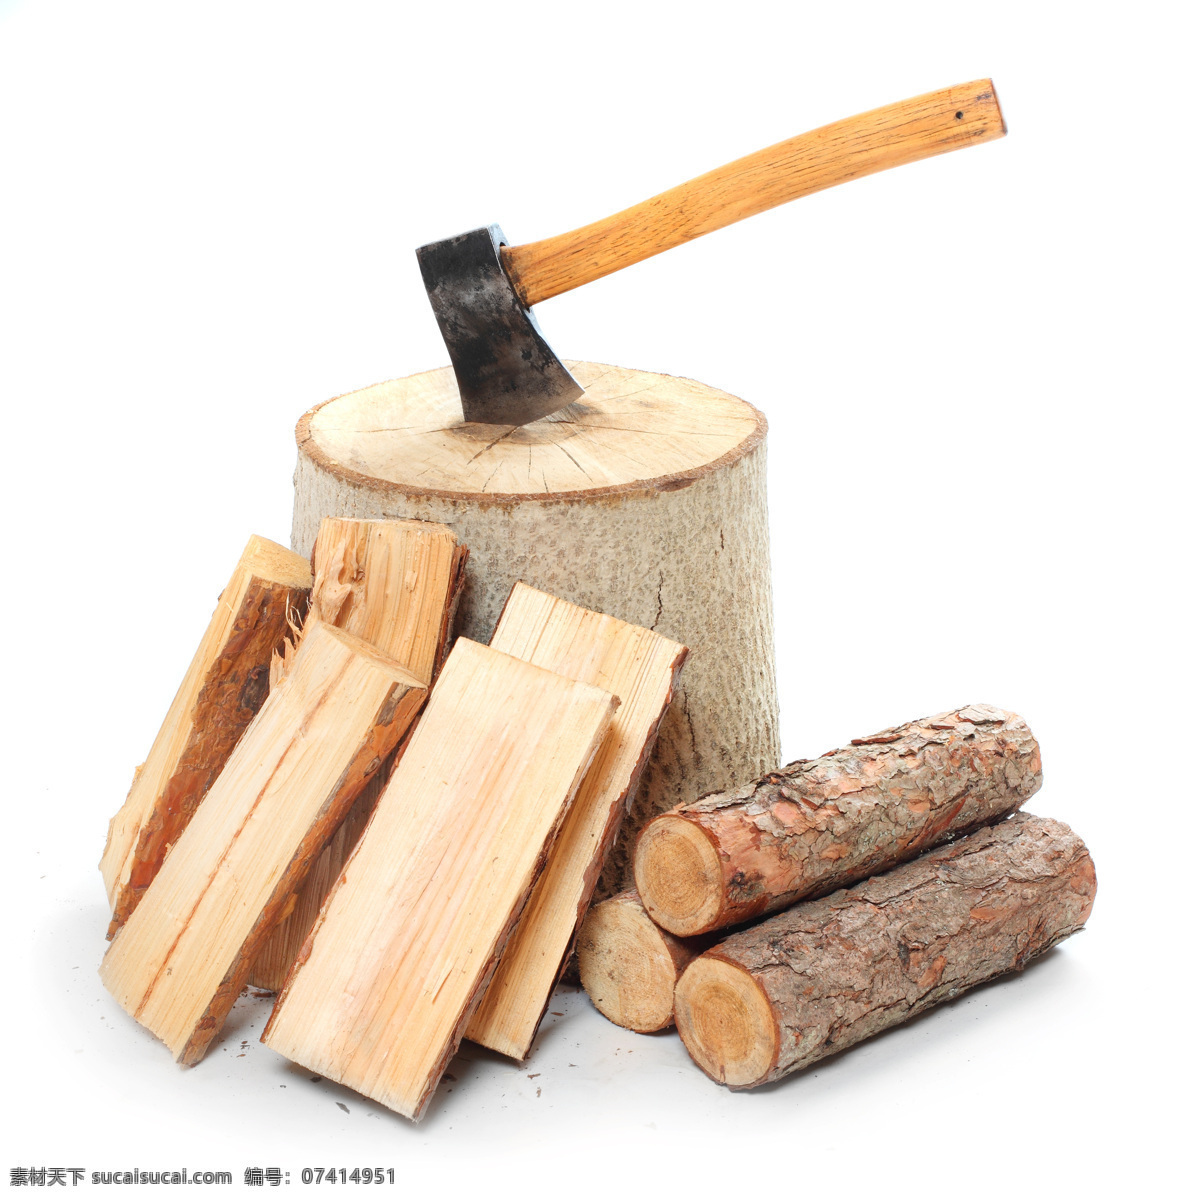 木头 木材 木桩 劈柴 斧子 生活素材 生活百科